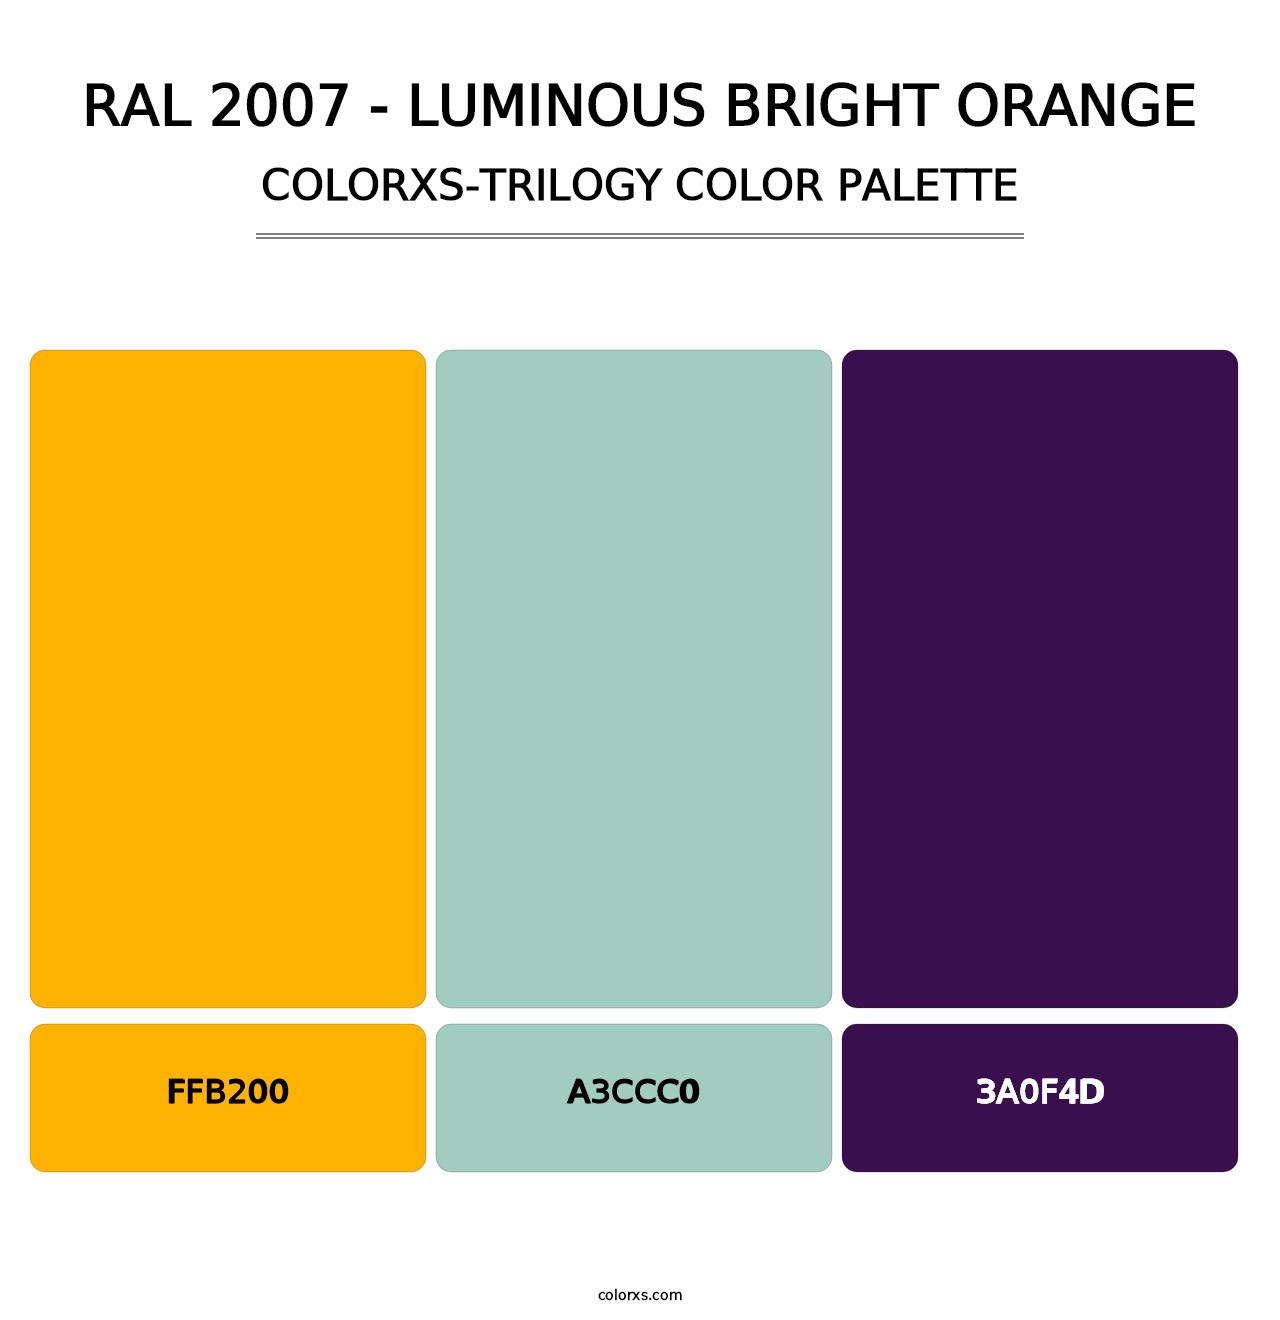 RAL 2007 - Luminous Bright Orange - Colorxs Trilogy Palette